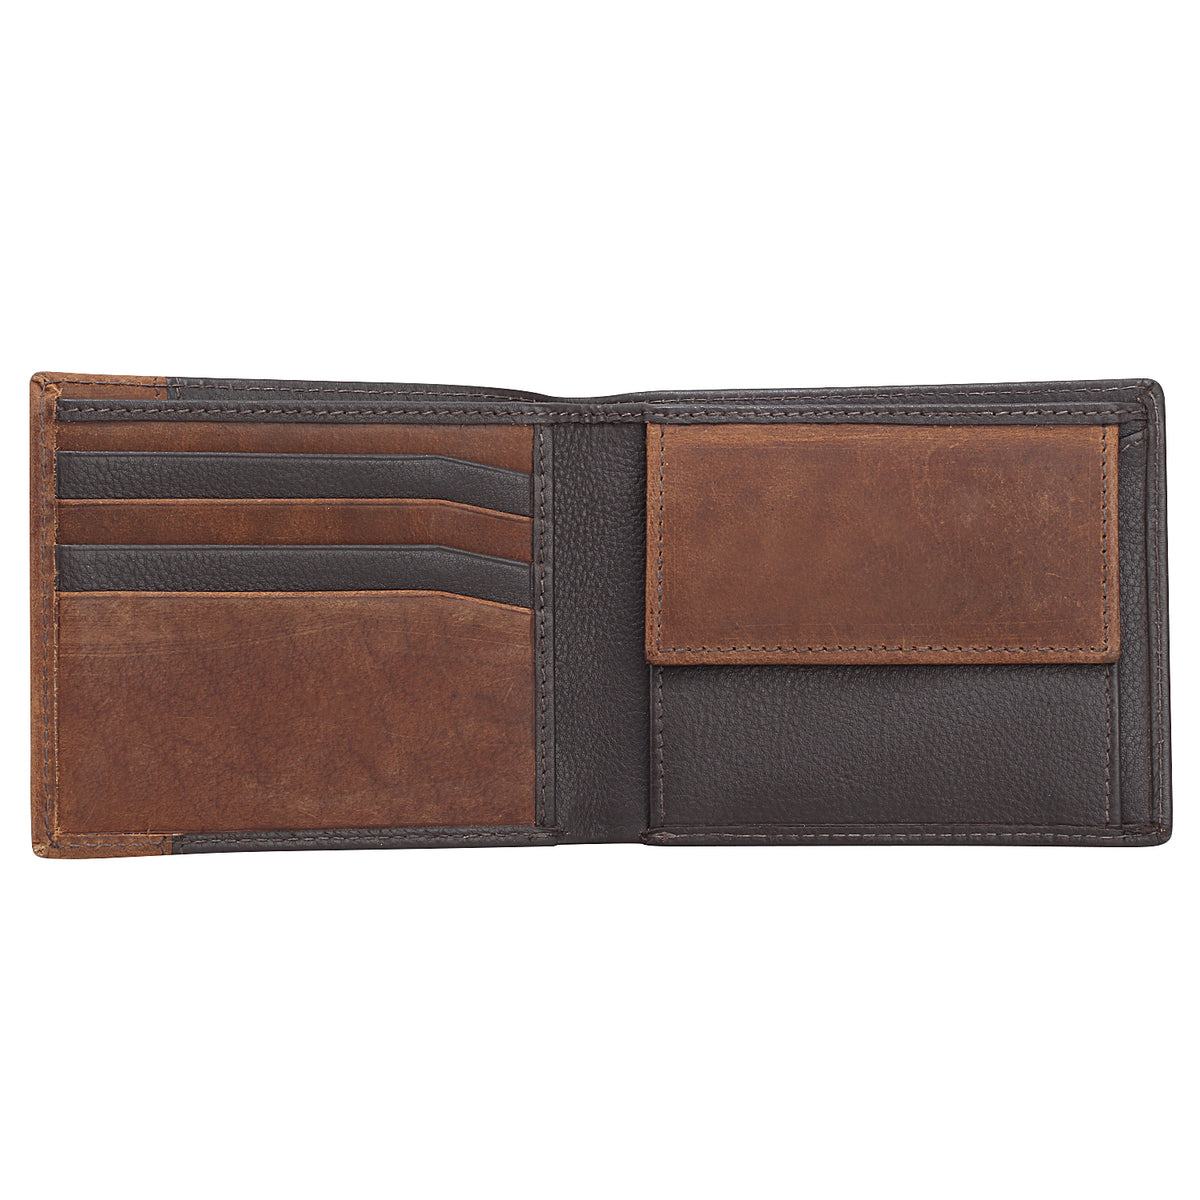 Genuine Leather Brown & Tan Men Wallet